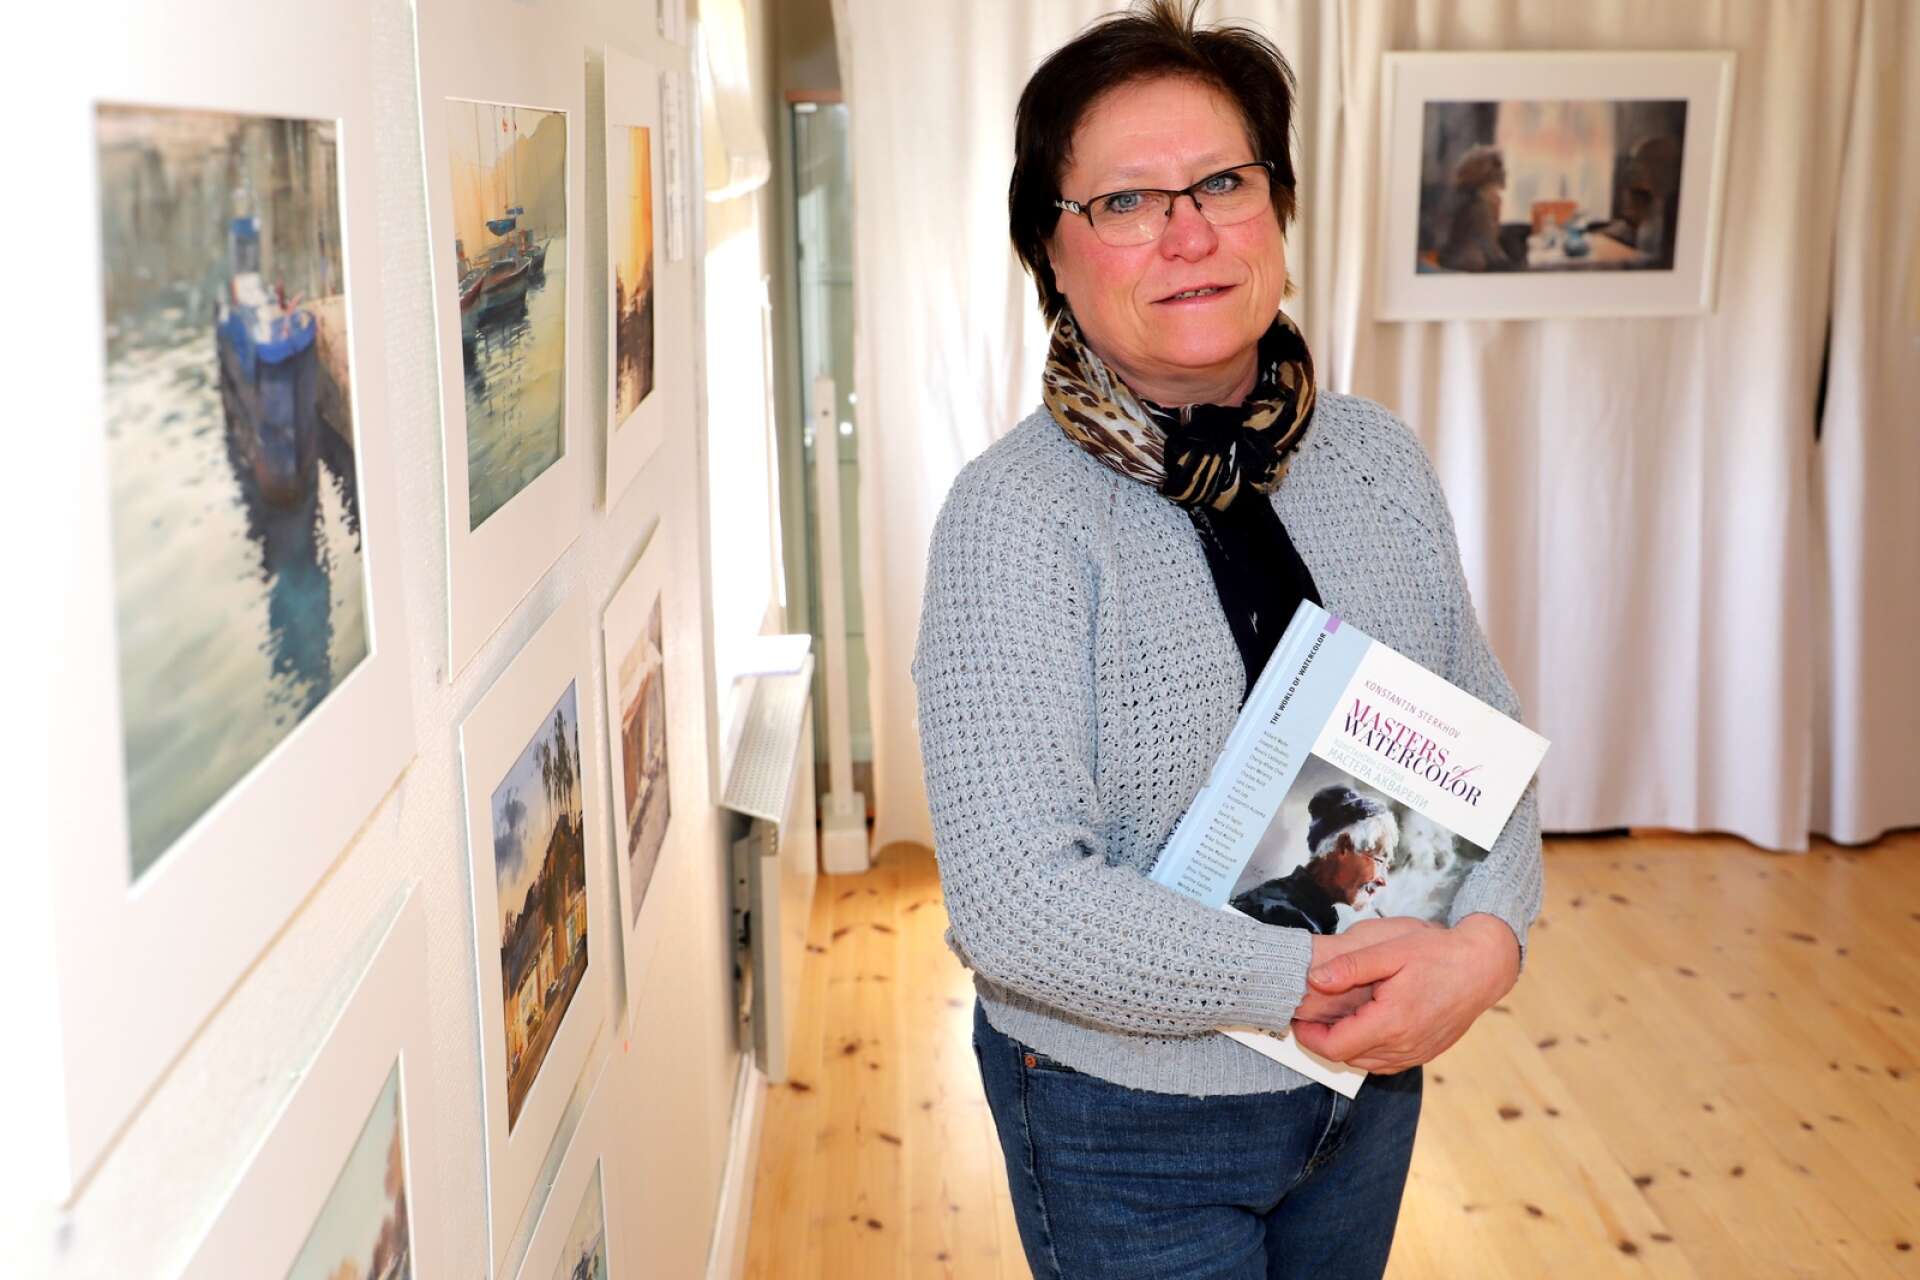 Olga Karlsson med en av Konstantin Sterkhofs böcker om konst. Hon är akvarellkonstnär och håller liksom Sterkhof ofta i målerikurser.